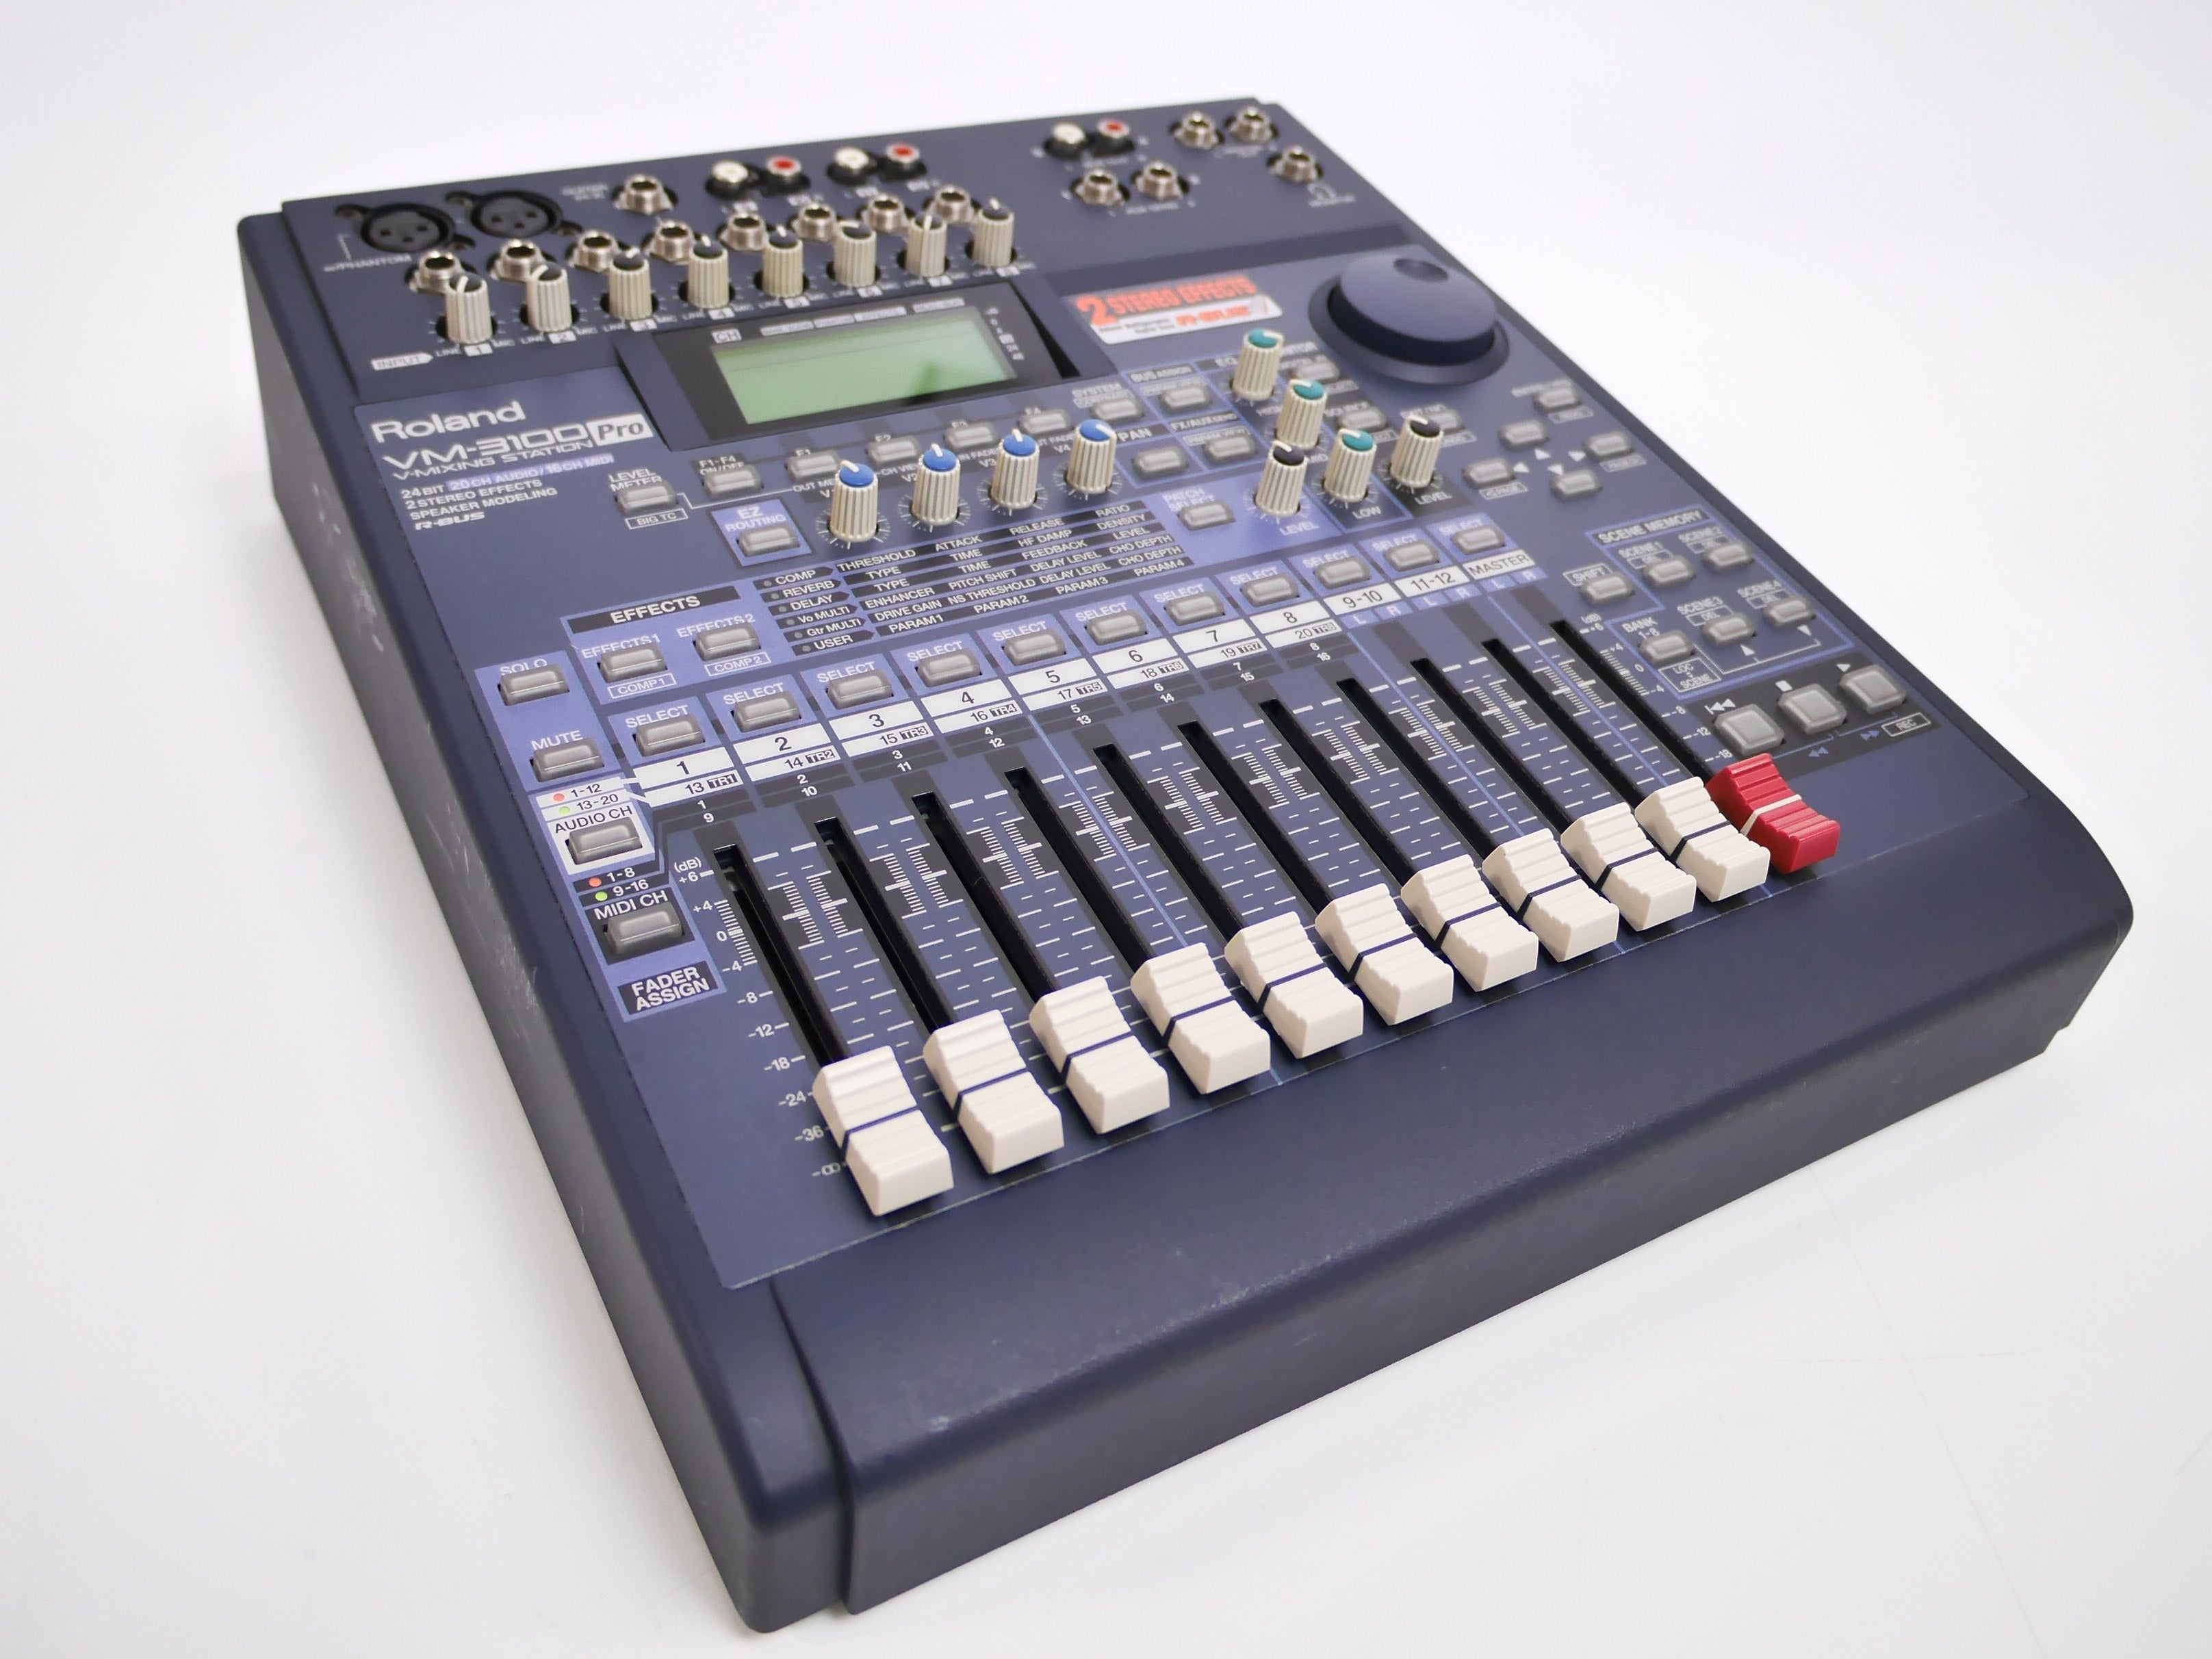 Roland ローランド VM-3100 PRO デジタルミキサー 12ch 音響機材 